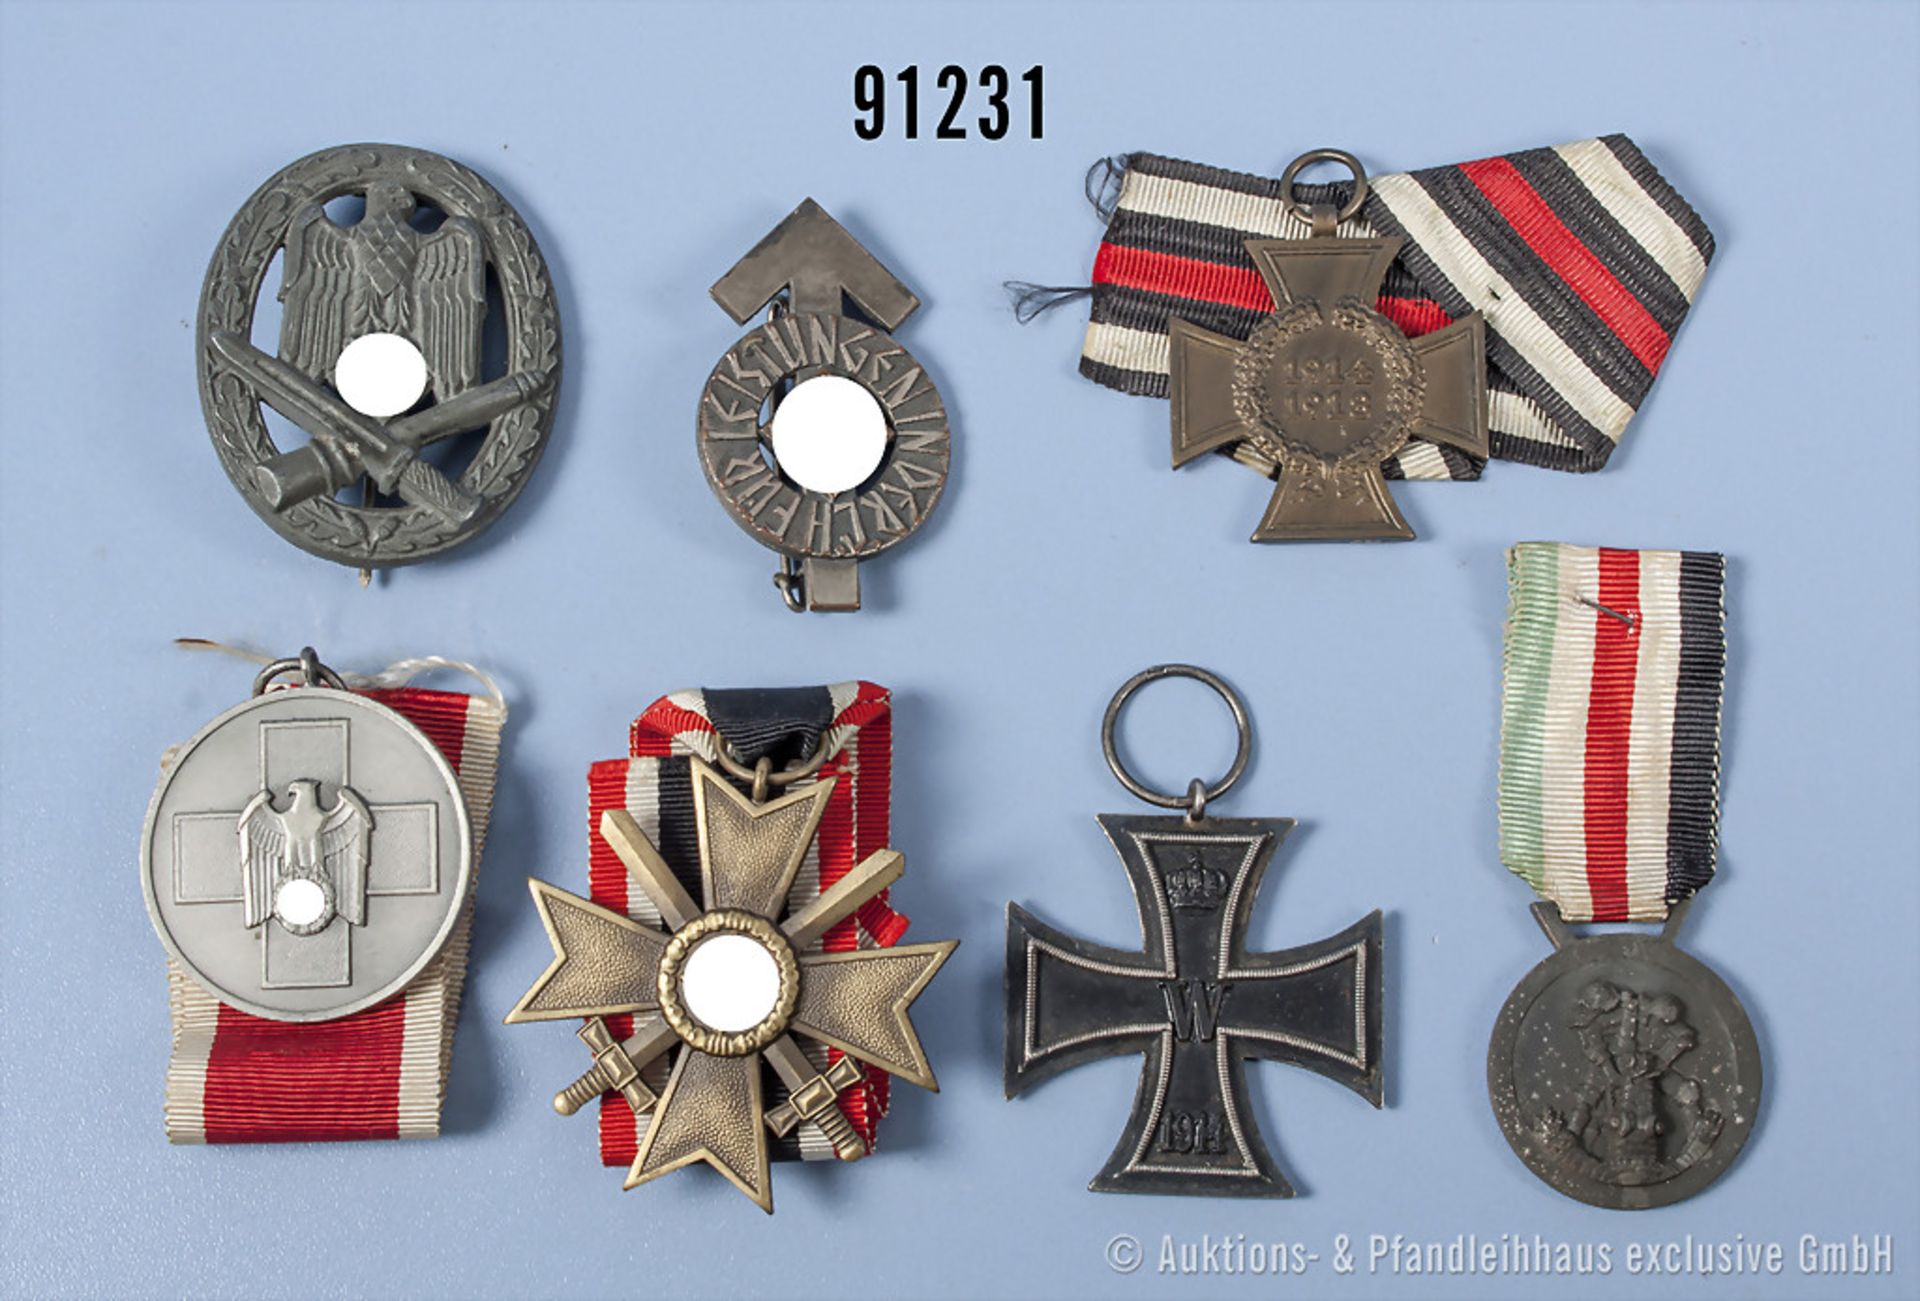 Konv. EK 2 1914, EKT, KVK 2. Klasse mit Schwertern, Deutsch-Italienische ...